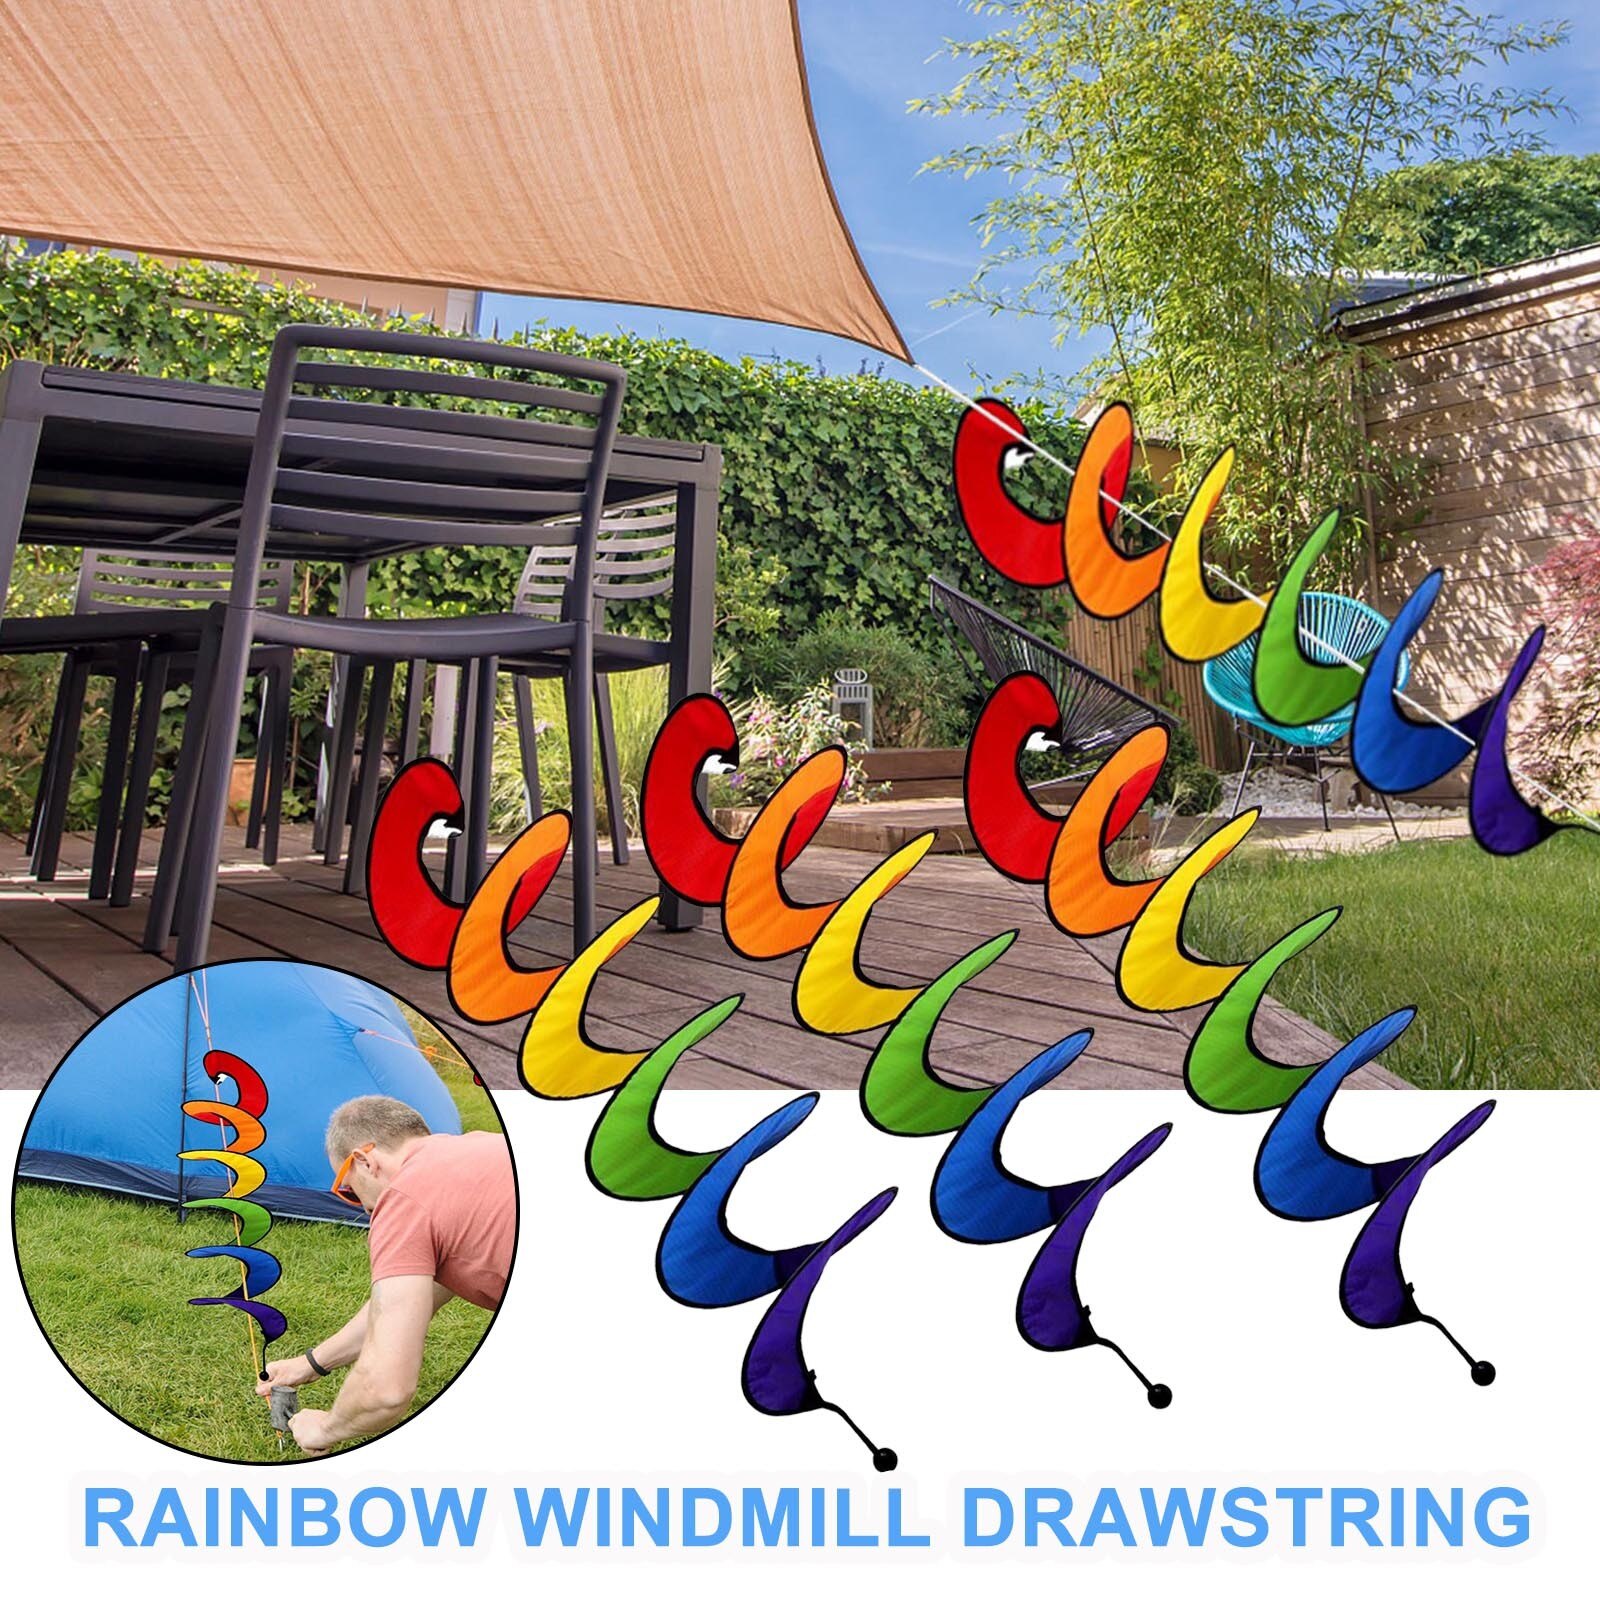 3Pcs Kleurrijke Opknoping Regenboog Wind Twist Spinners, Regenboog Curlie Spinners Voor Tuin Of Outdoor Camping Decoratie